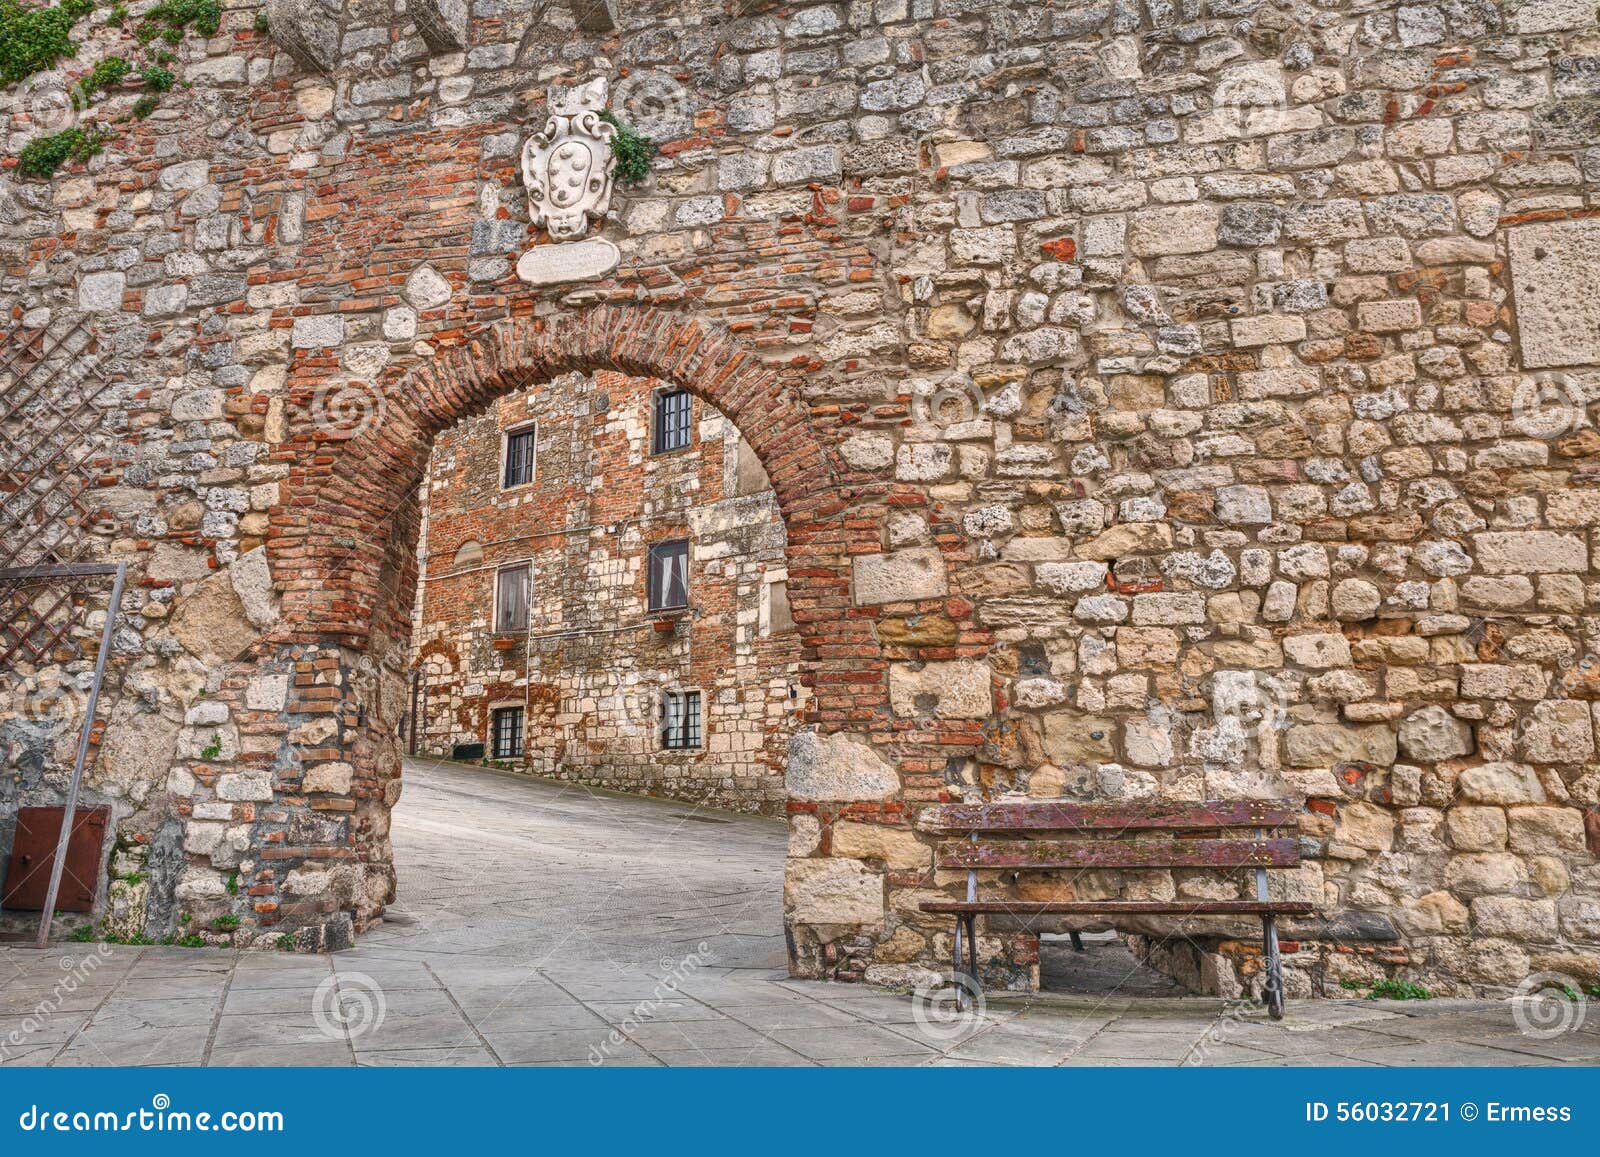 ancient street in rosignano marittimo, leghorn, tuscany, italy